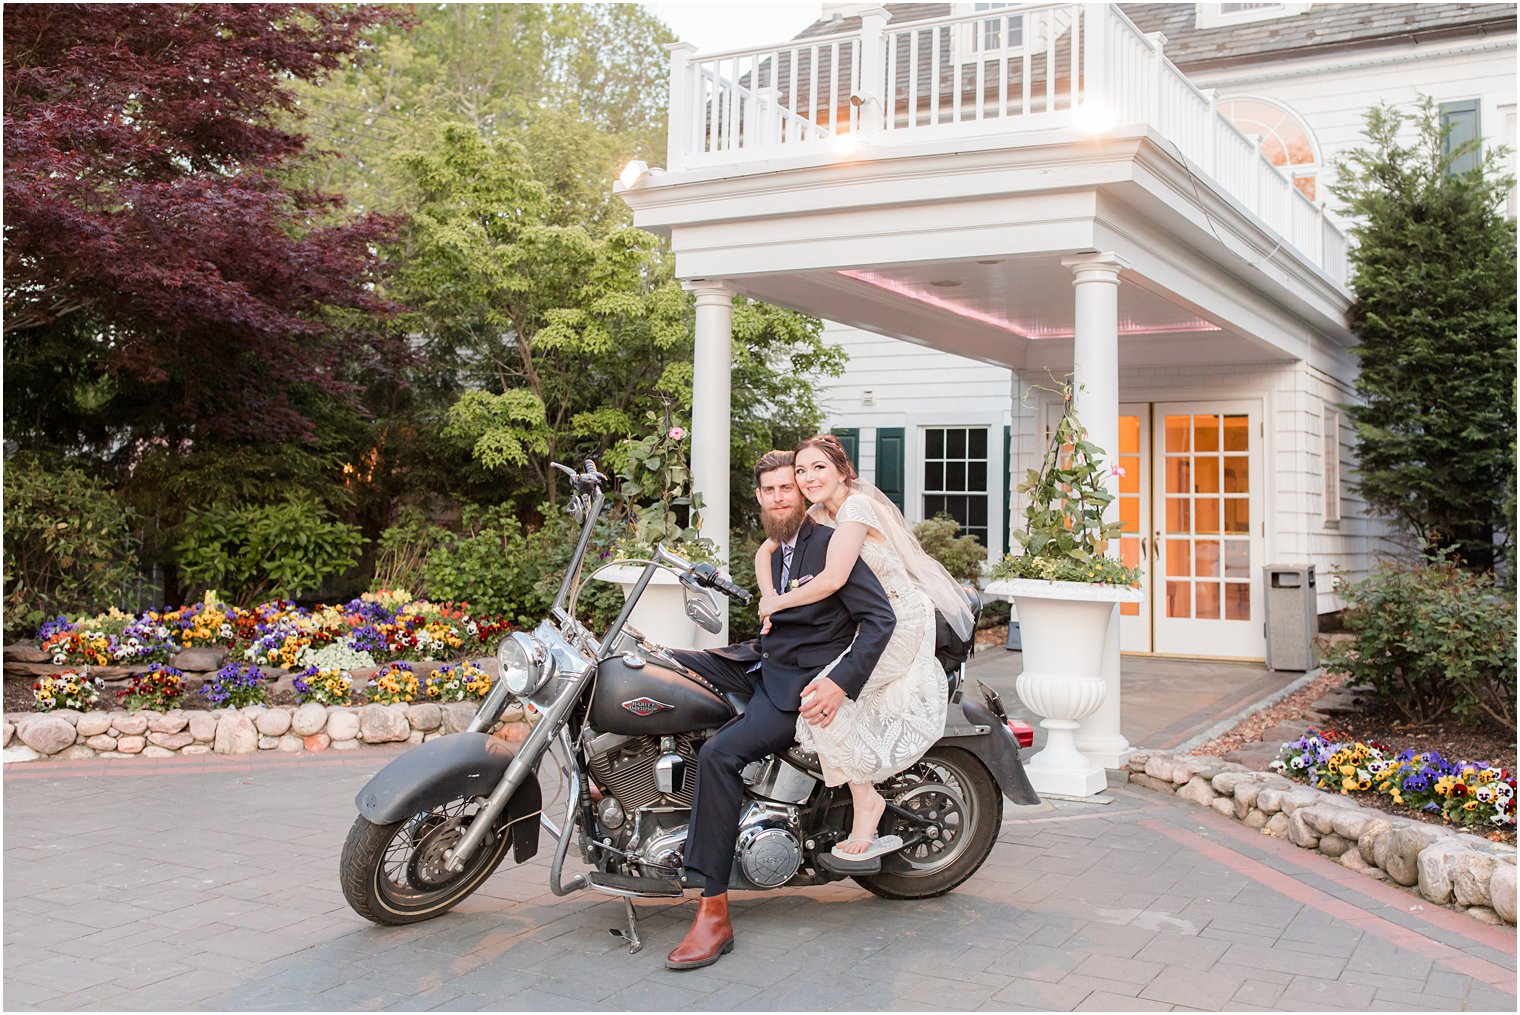 newlyweds pose on motorcycle outside The English Manor